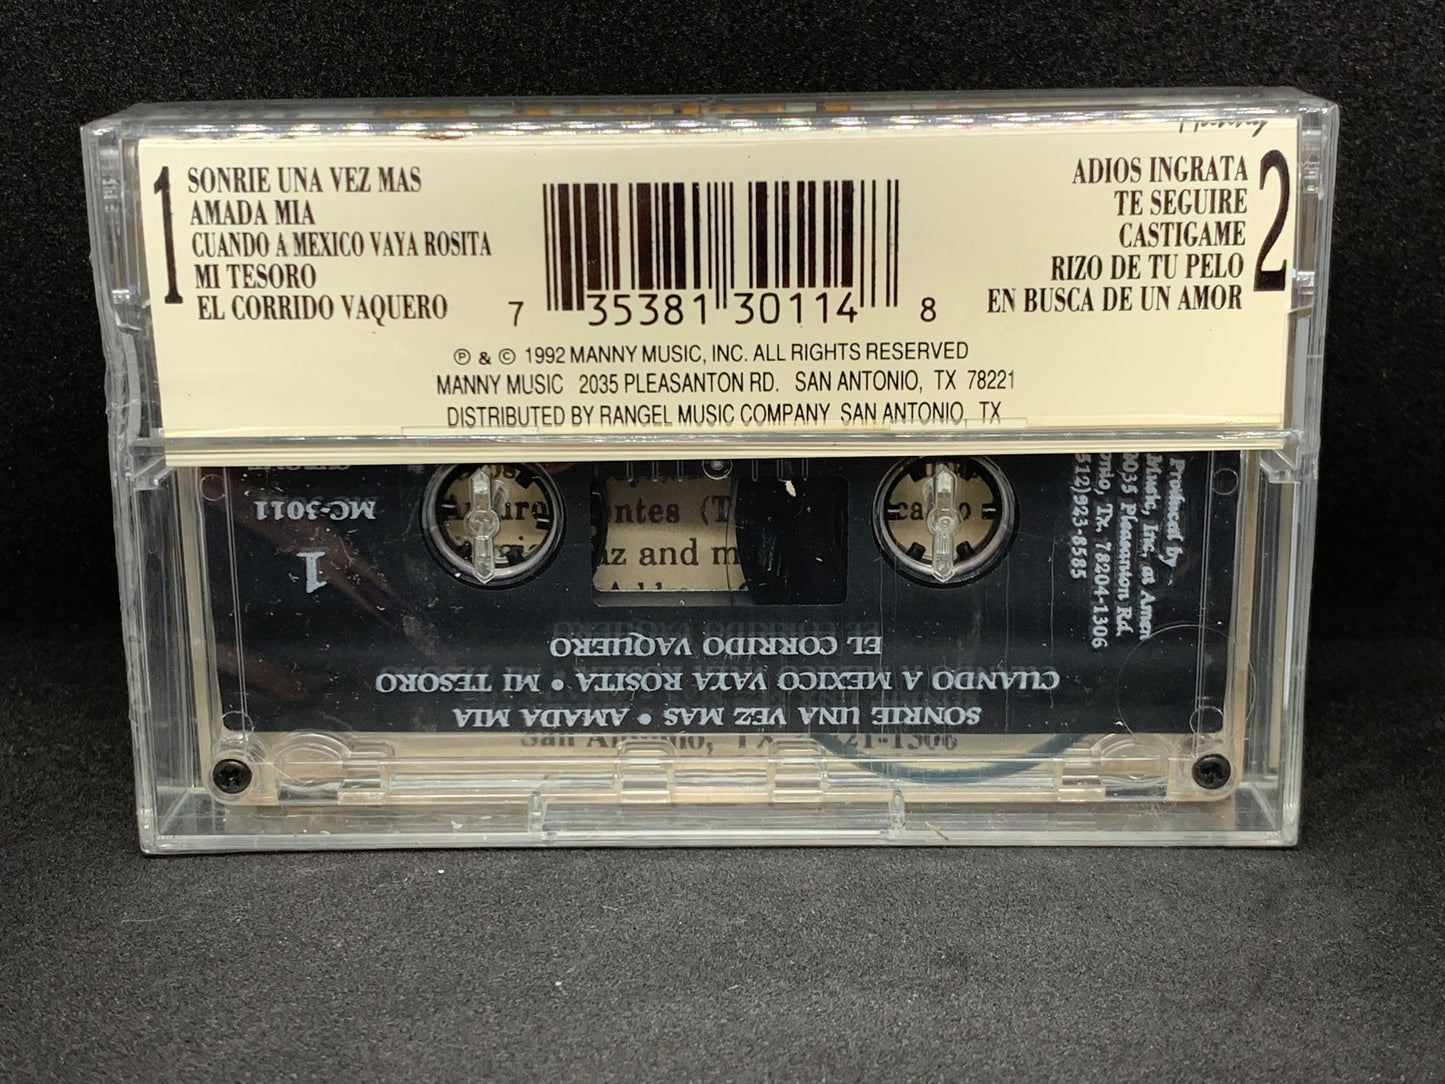 La Tropa F - Right On Track (Cassette)